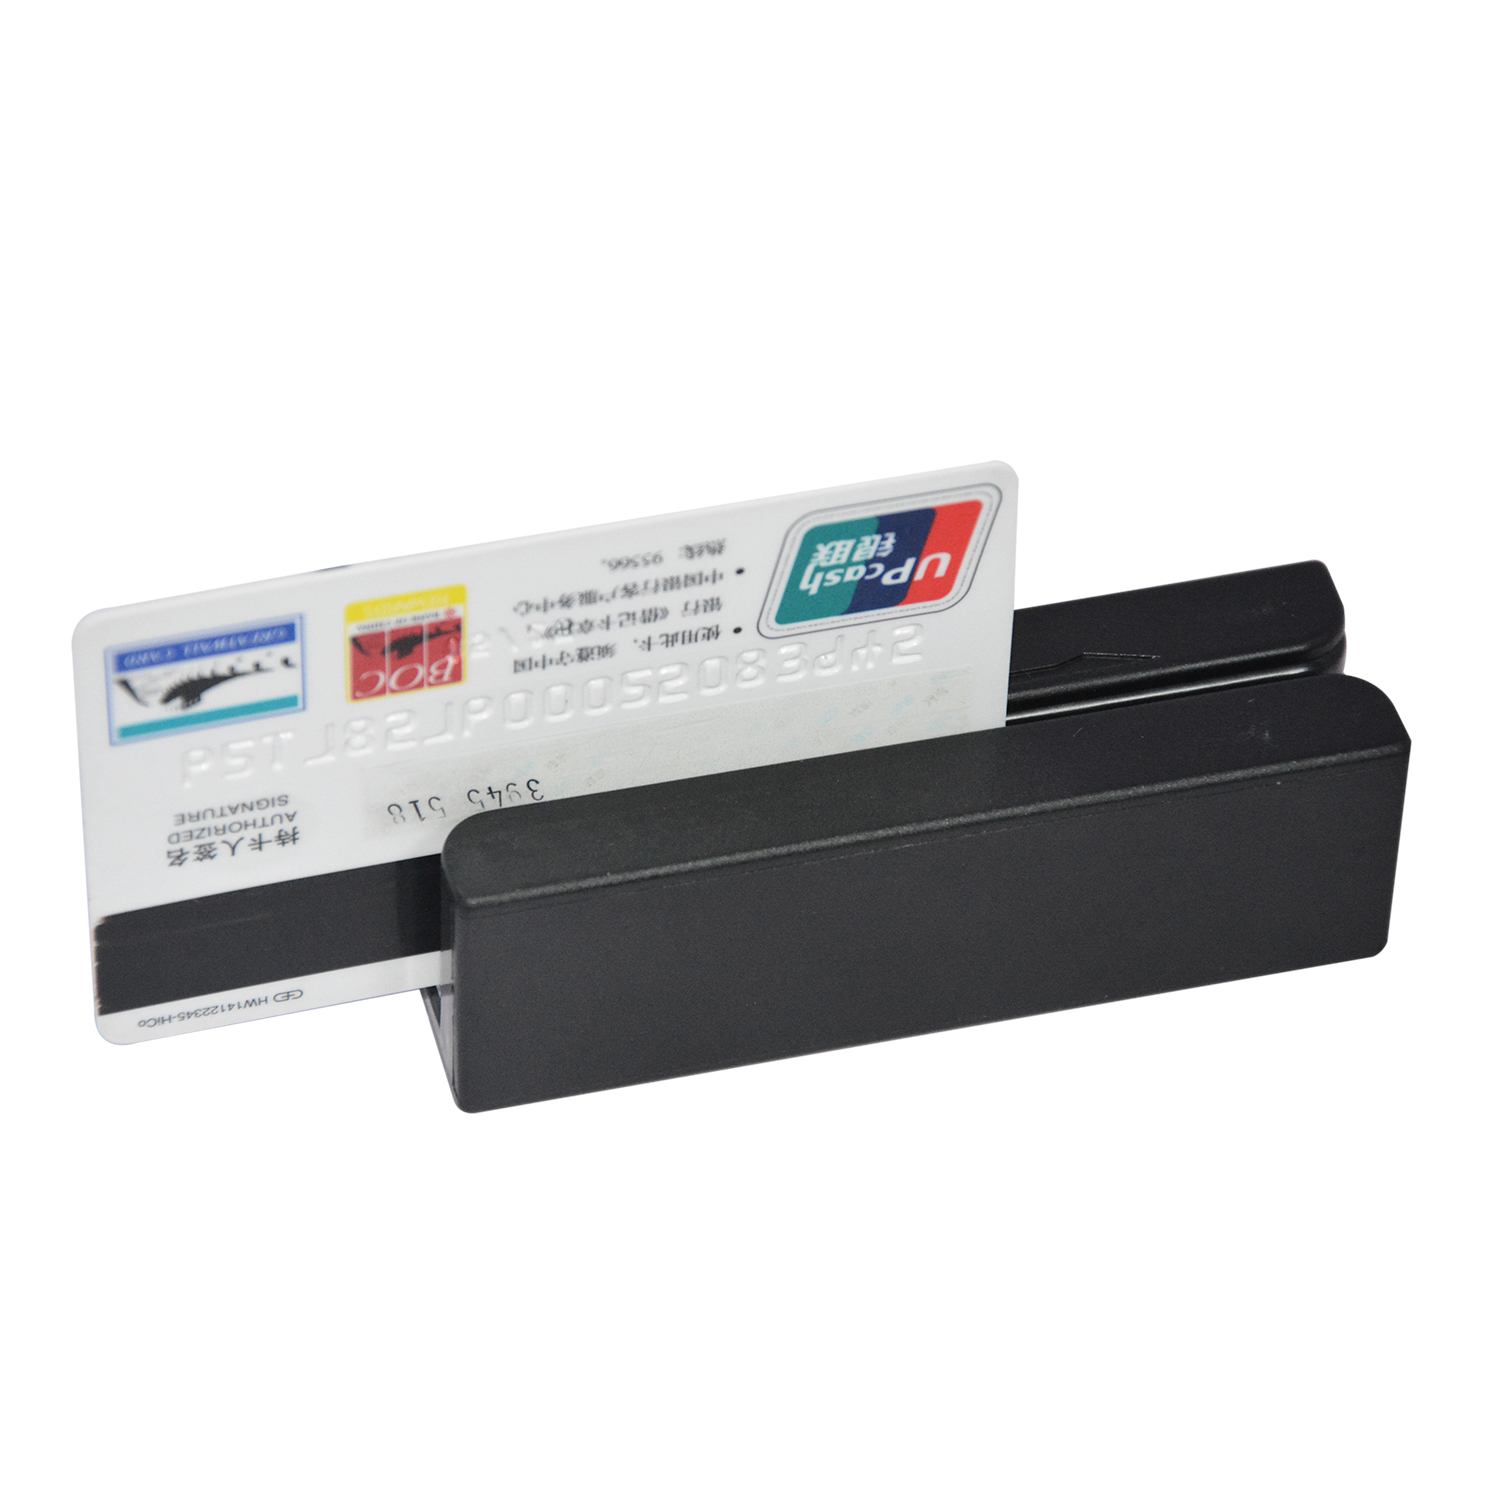 PS/USB 3 дорожки ISO7811 Мини-считыватель магнитных карт HCC750U